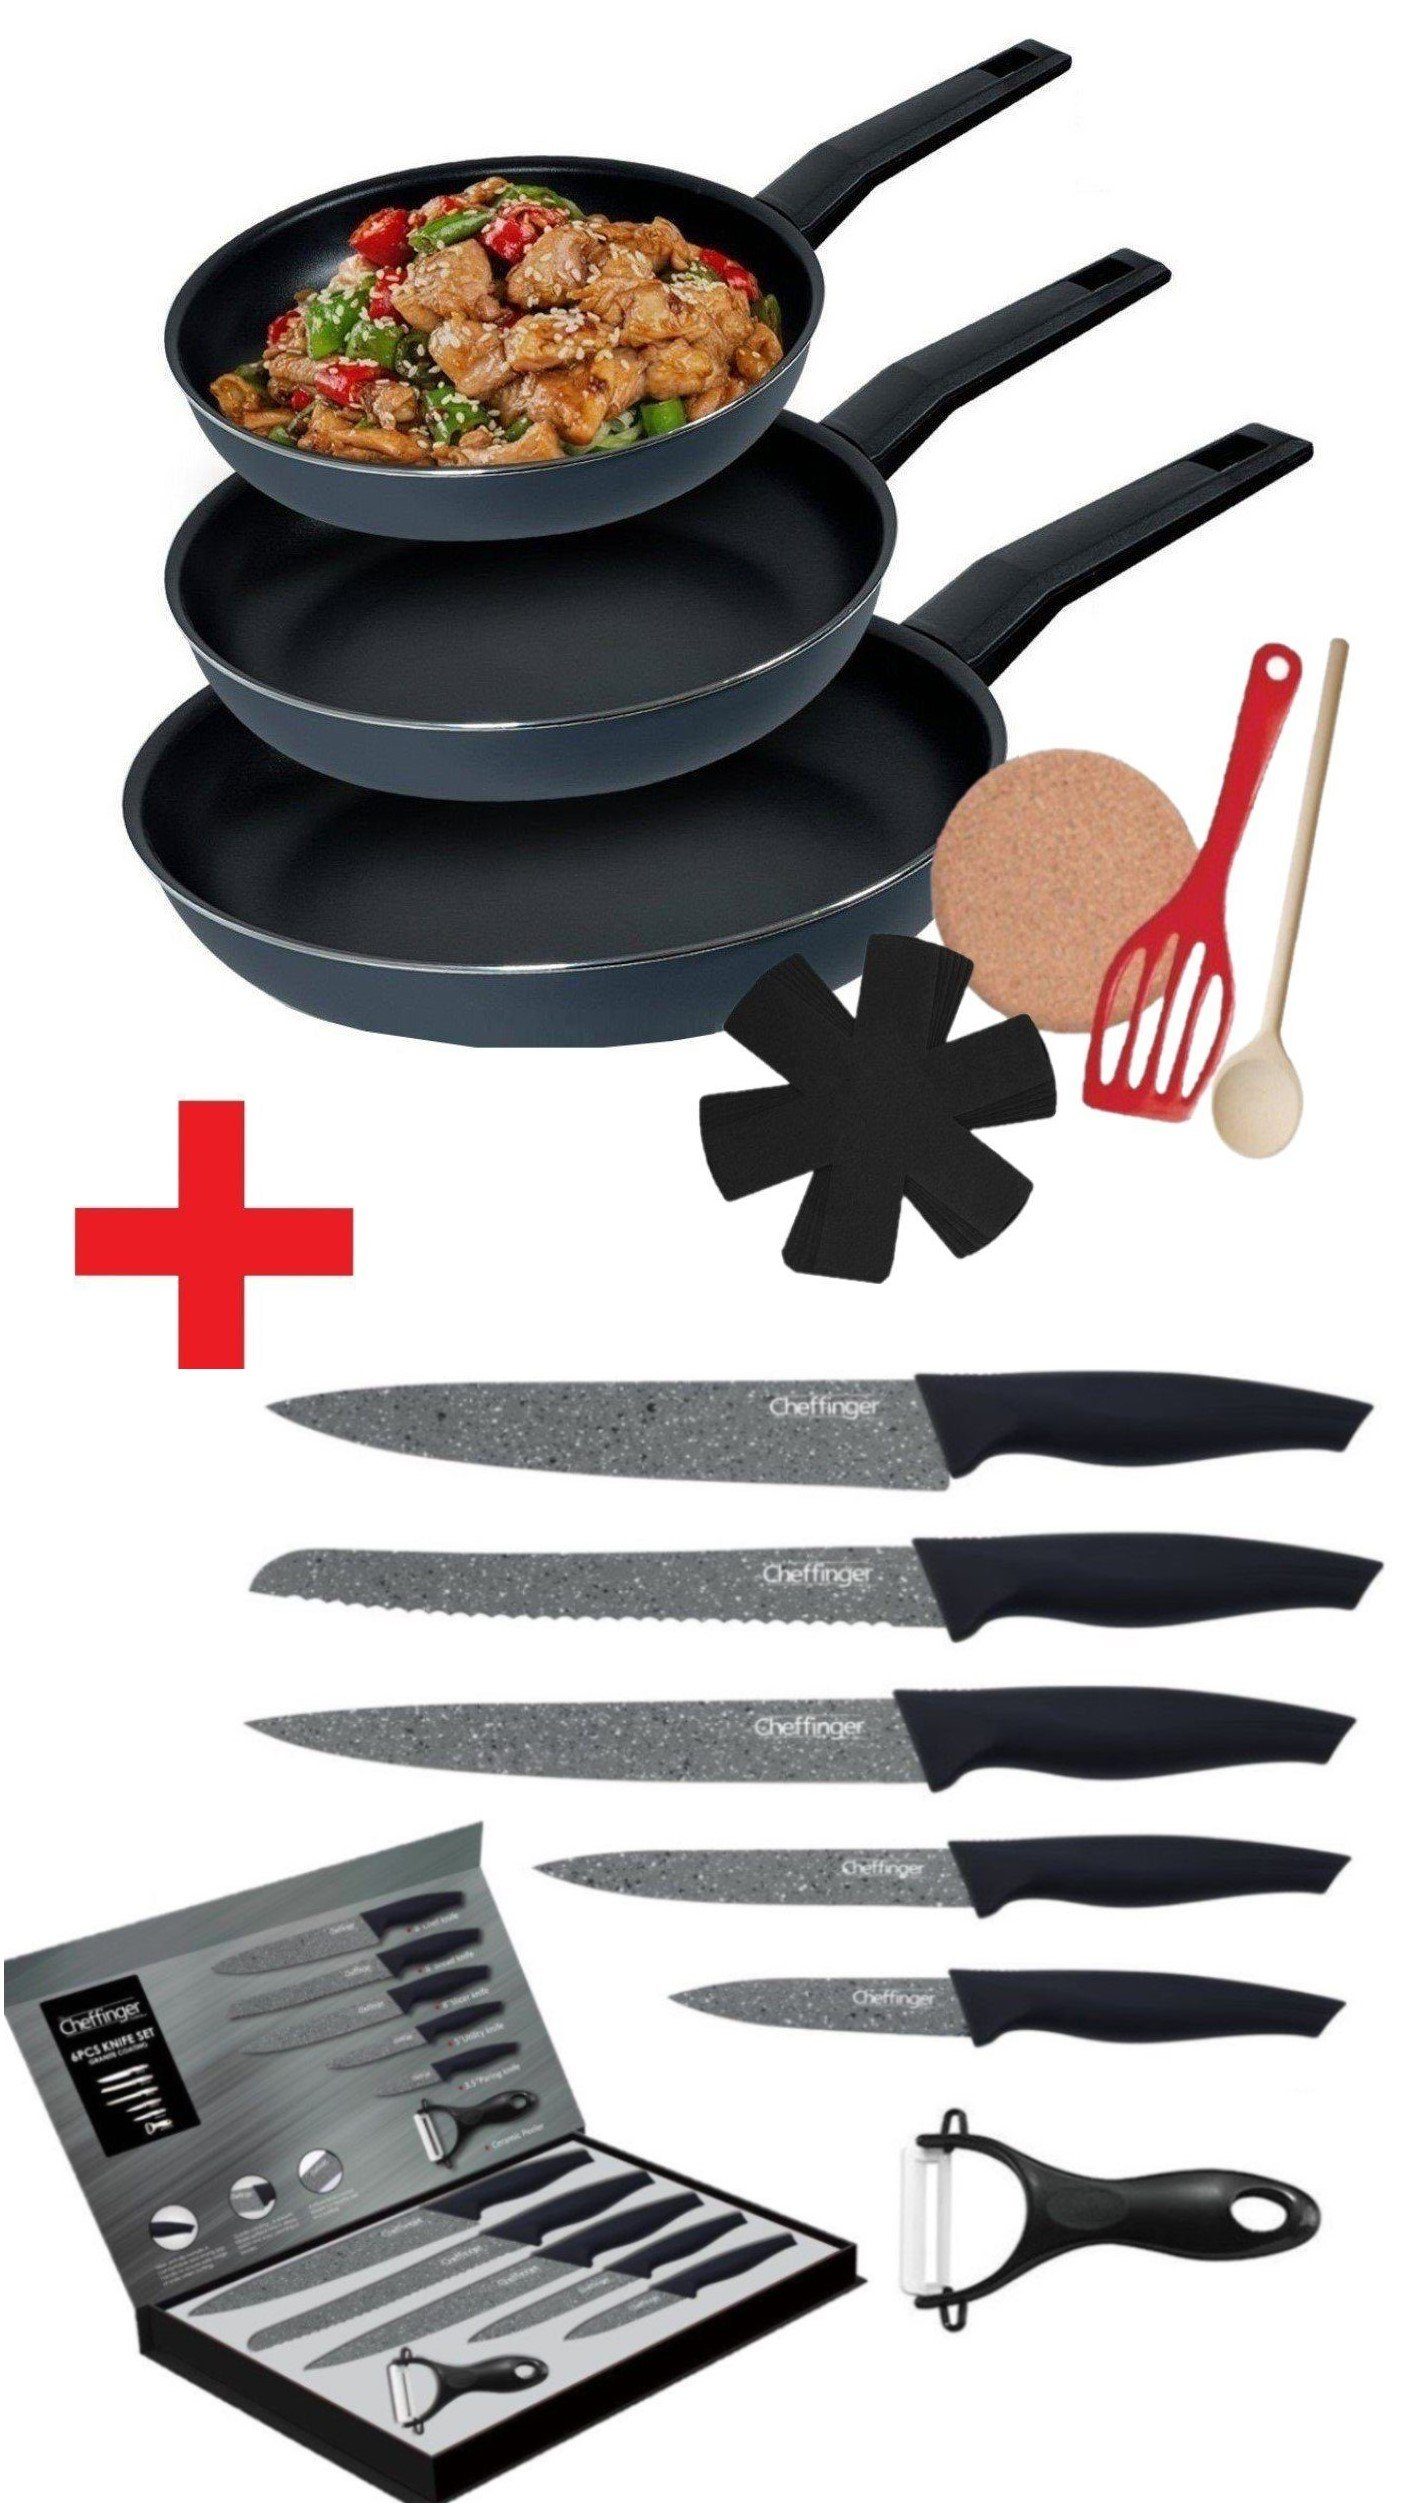 KESSMANN Pfannen-Set Induktion Bratpfannen 9tlg + Küchen Messerset 6tlg -KOMPLETT SET-, Aluminium (Set, 15-tlg., Inkl 1 Pfannenwender + 1 Untersetzer + 1 Löffel + 3 Einlagen Antihaft), Küchen Messer Set Messerblock Pfanne Pfannenset Knife Induktionsherd